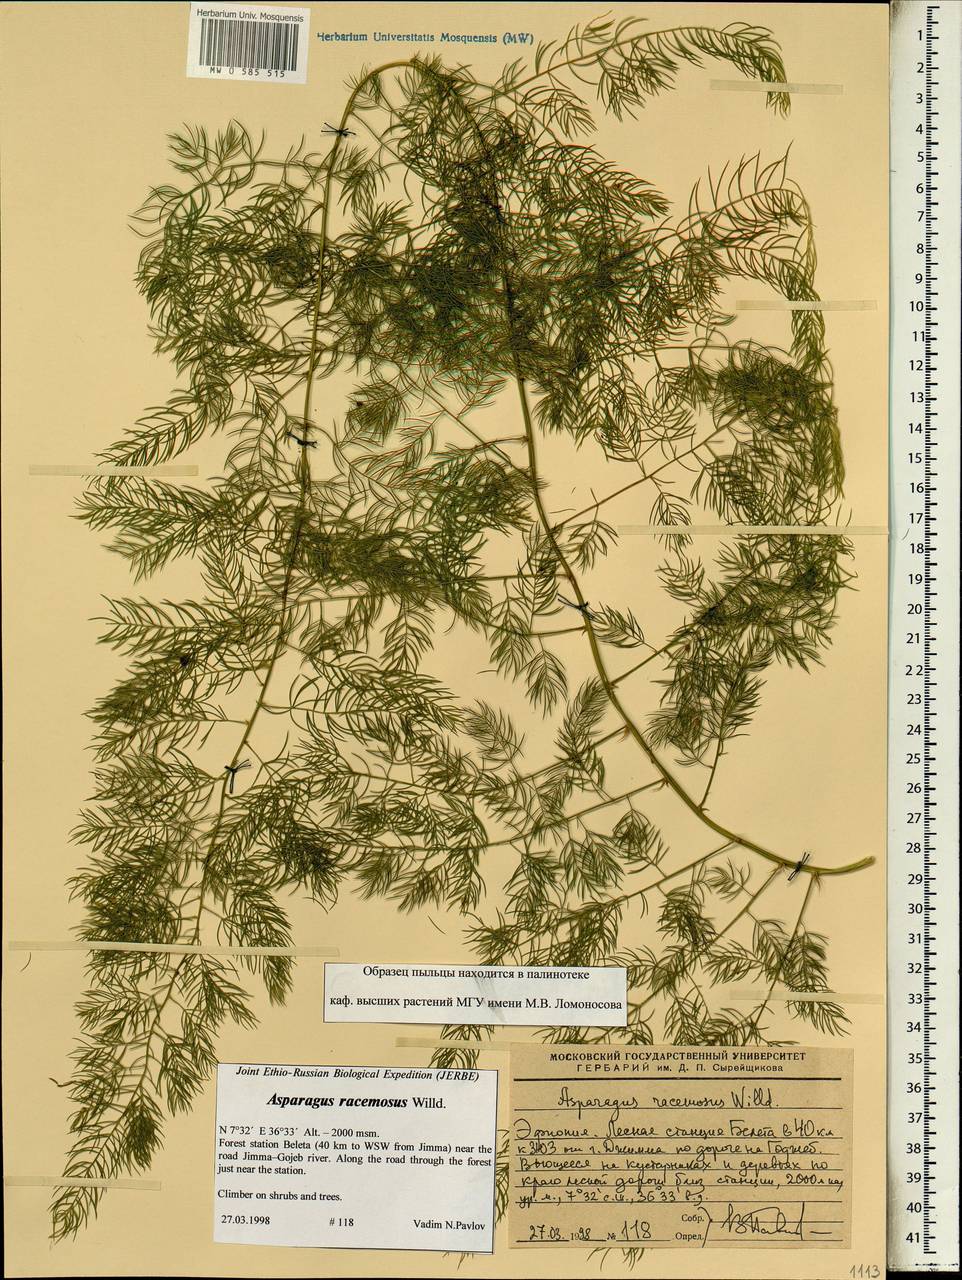 Asparagus racemosus Willd., Africa (AFR) (Ethiopia)